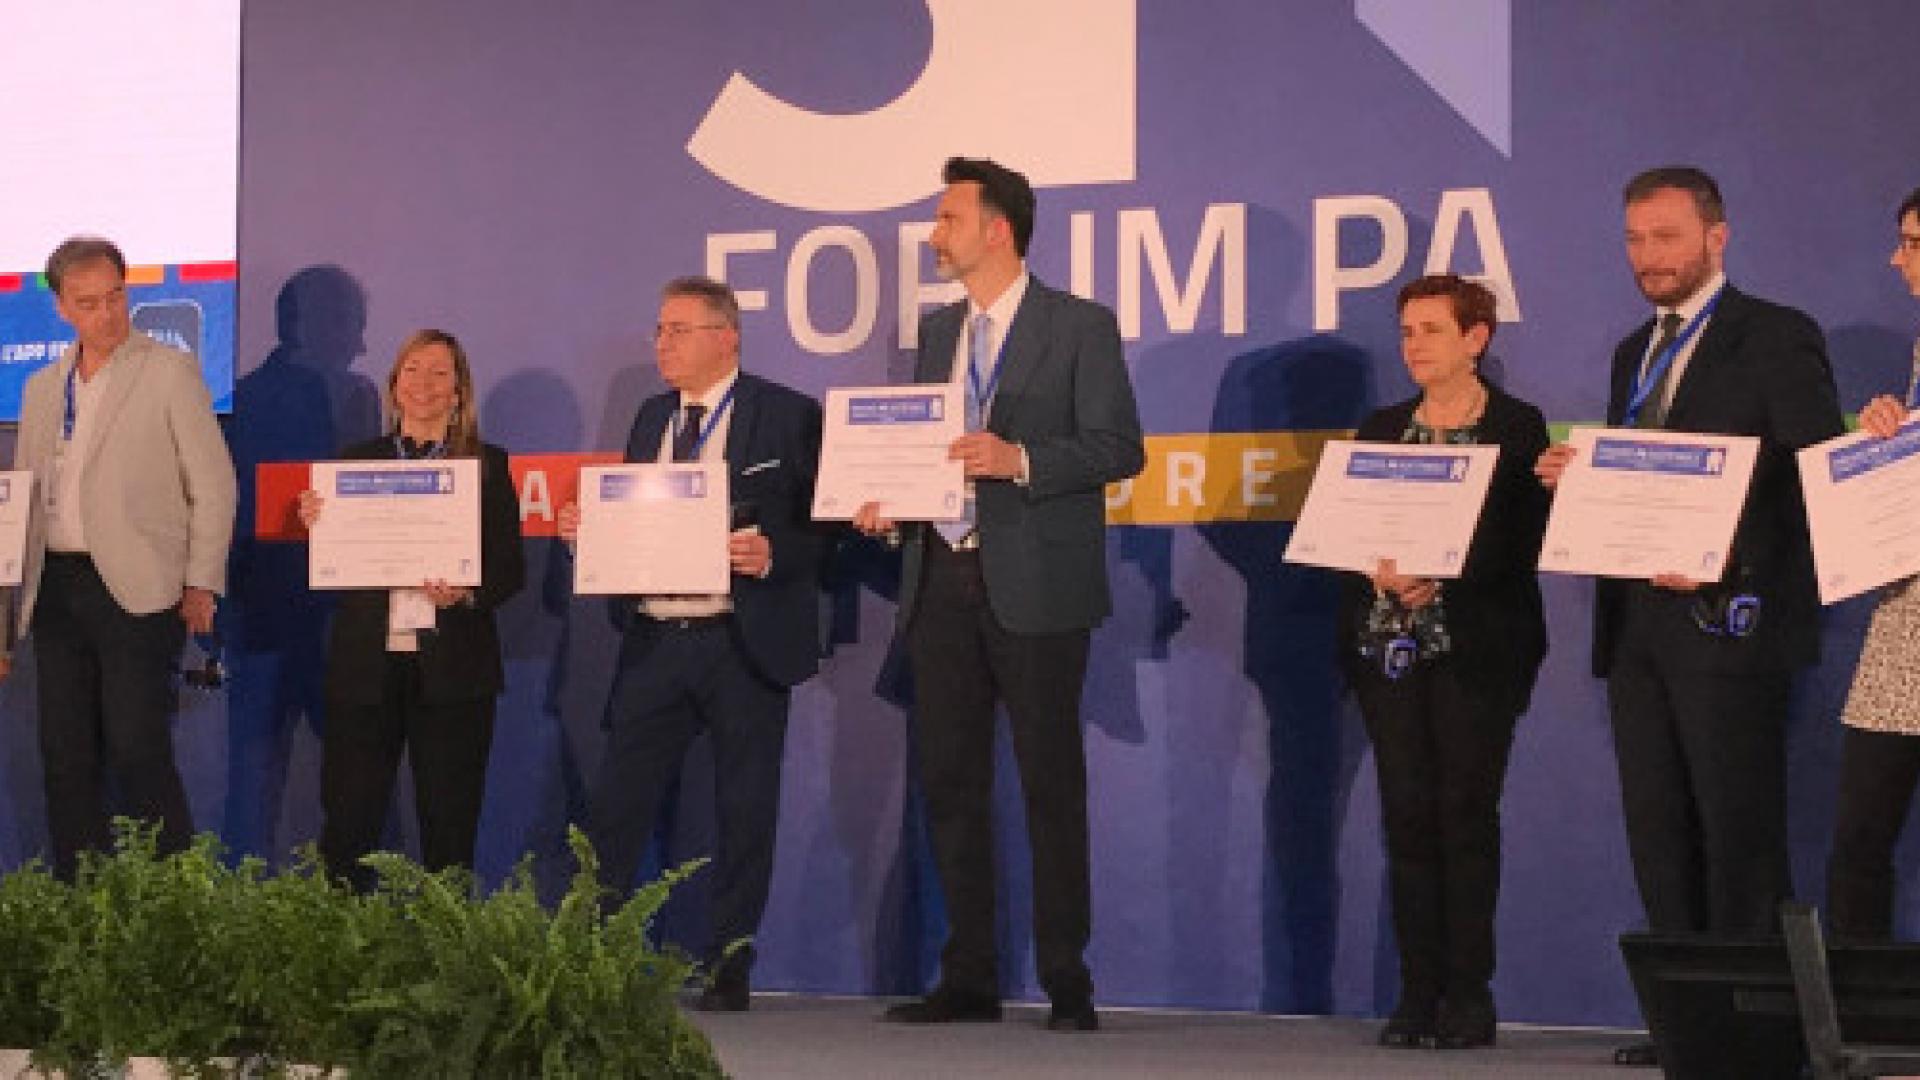 Bologna premiata al Forum PA per progetti innovativi su educazione e welfare digitale, foto di gruppo